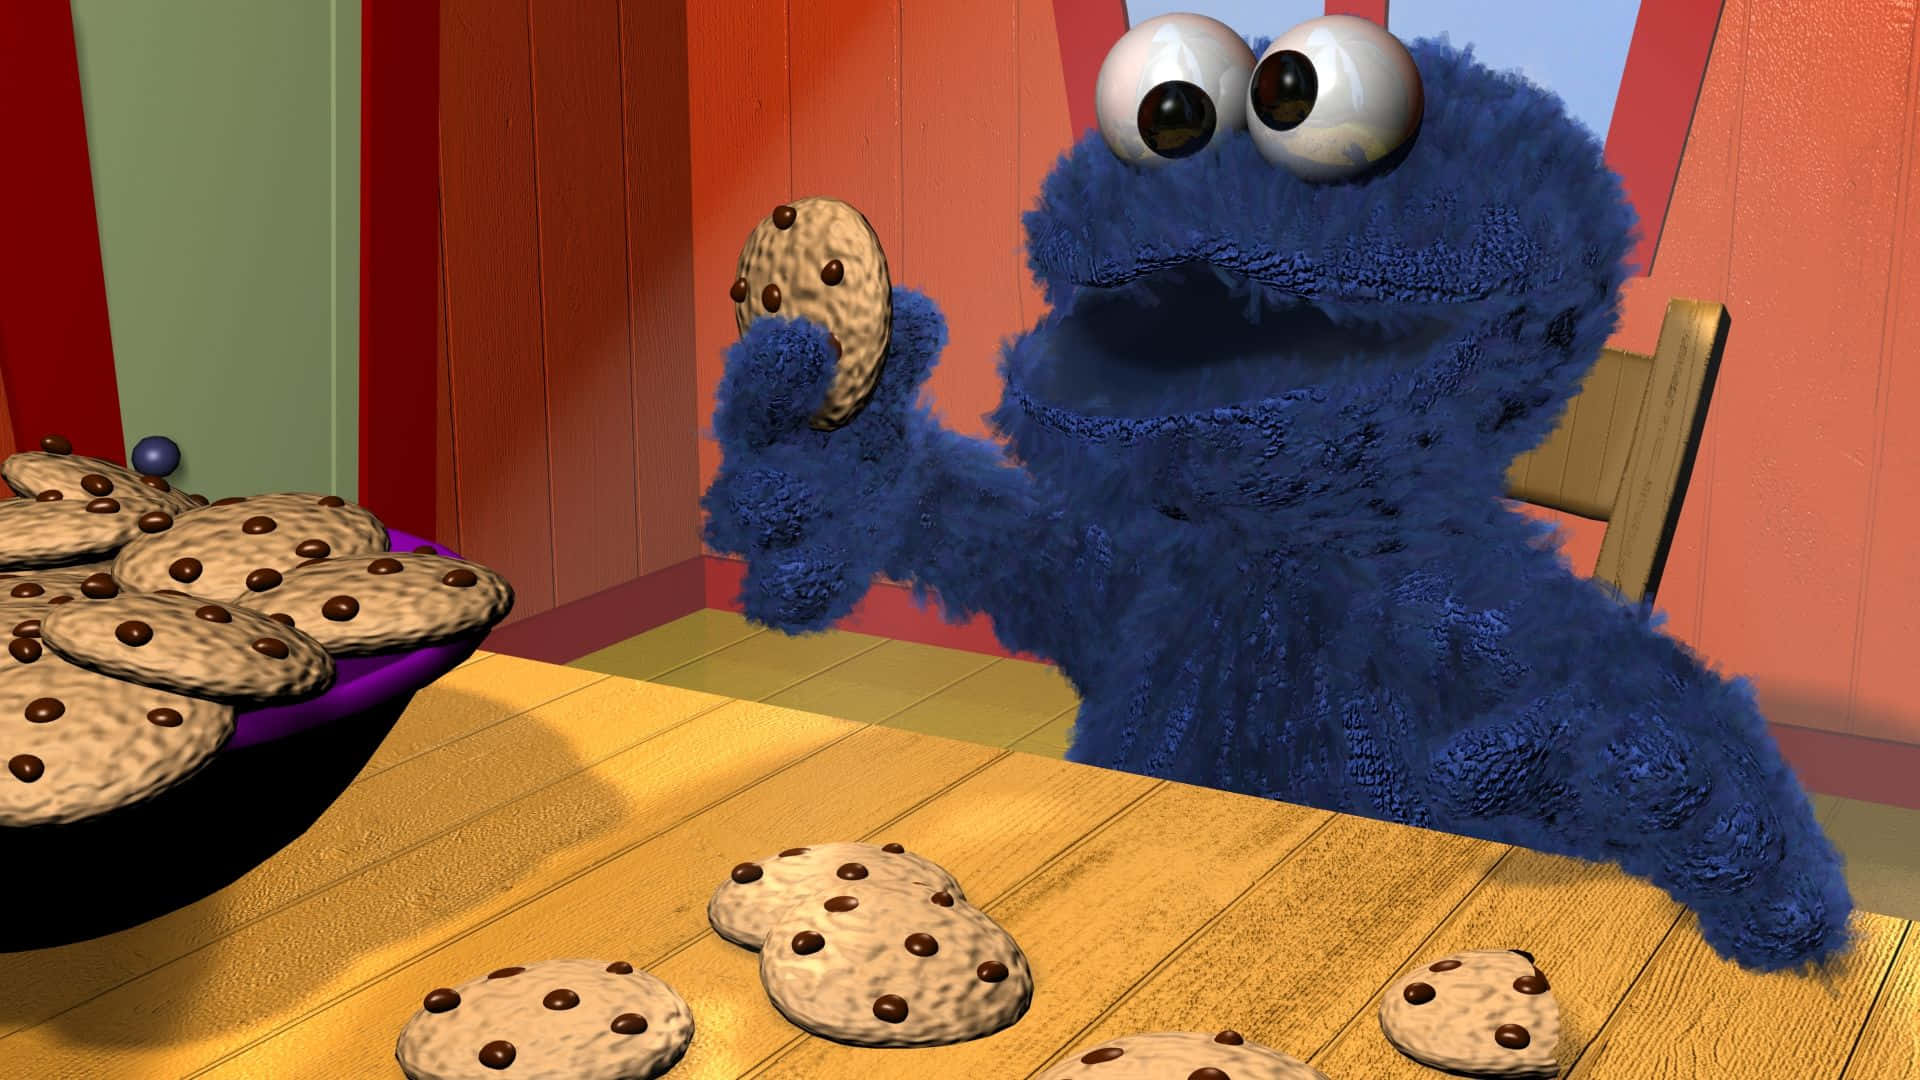 Cookie Monster joyfully devouring cookies